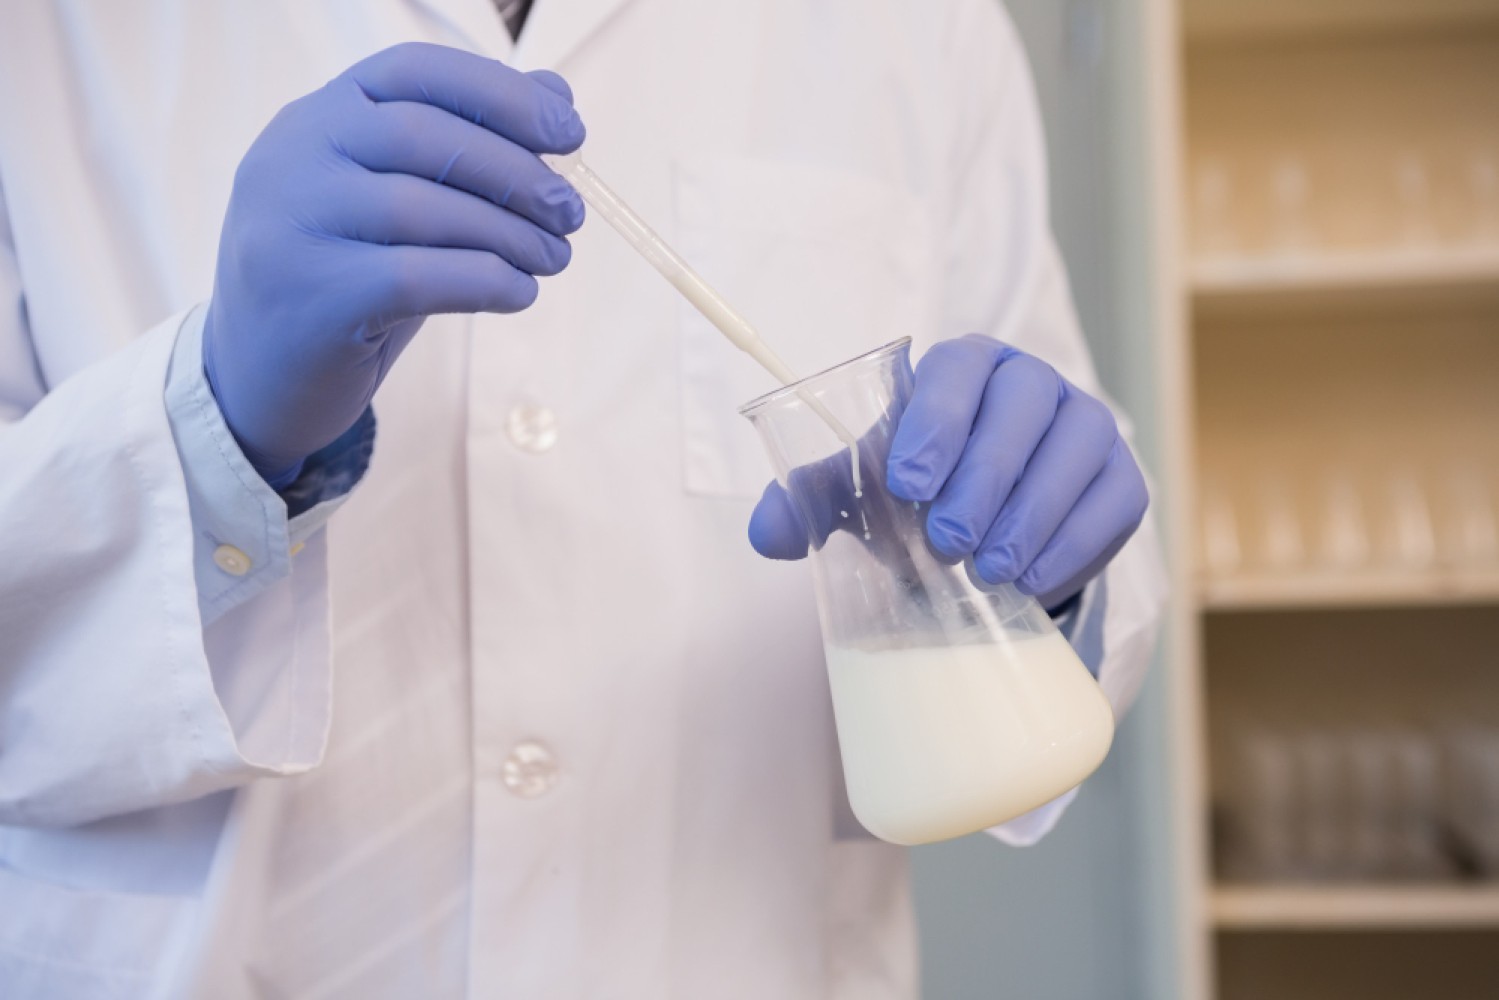 Статья раскрывает основы промышленной санитарии на предприятиях молочной промышленности, акцентируя внимание на микробиологическом контроле производства молочных продуктов, методах, стандартах и вызовах.